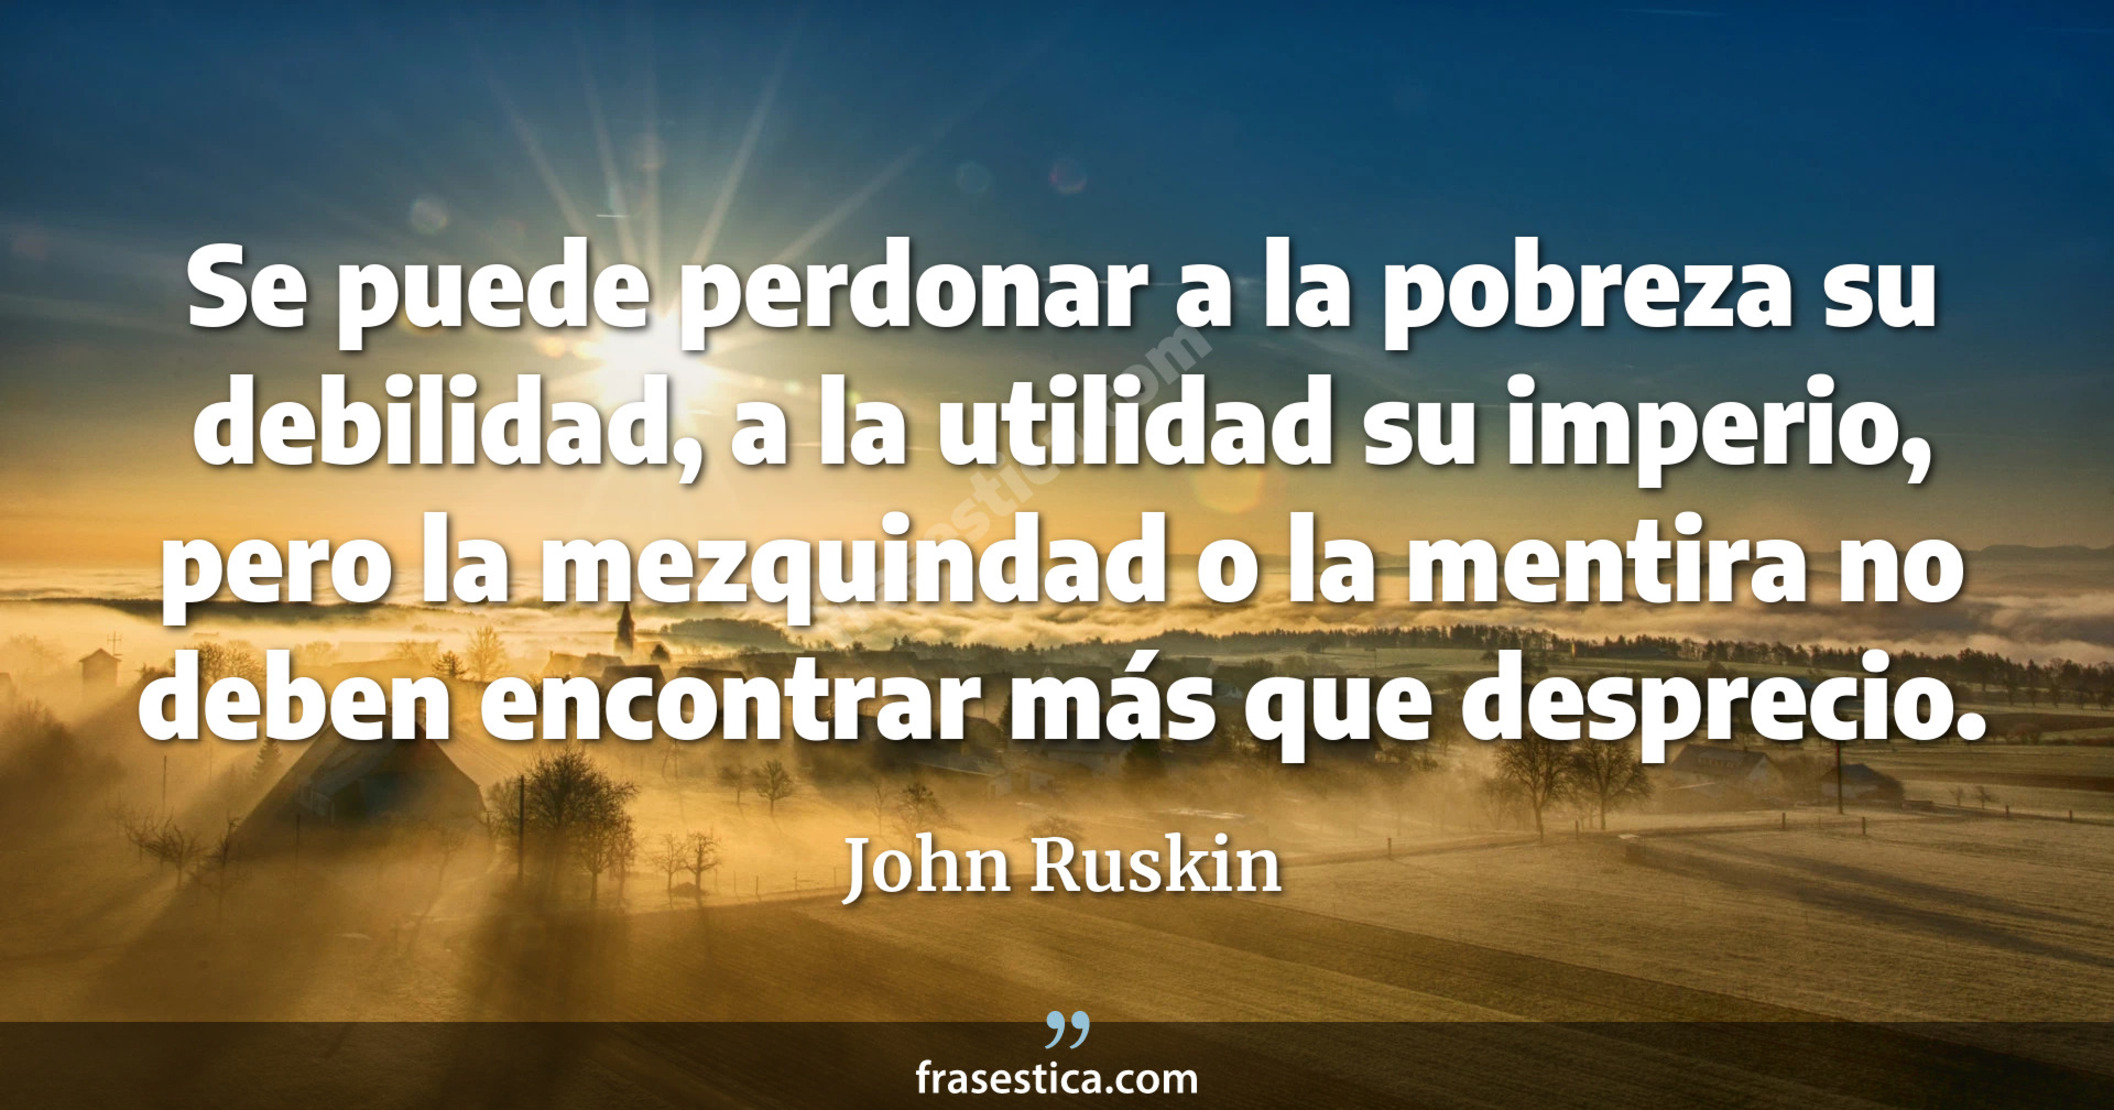 Se puede perdonar a la pobreza su debilidad, a la utilidad su imperio, pero la mezquindad o la mentira no deben encontrar más que desprecio. - John Ruskin